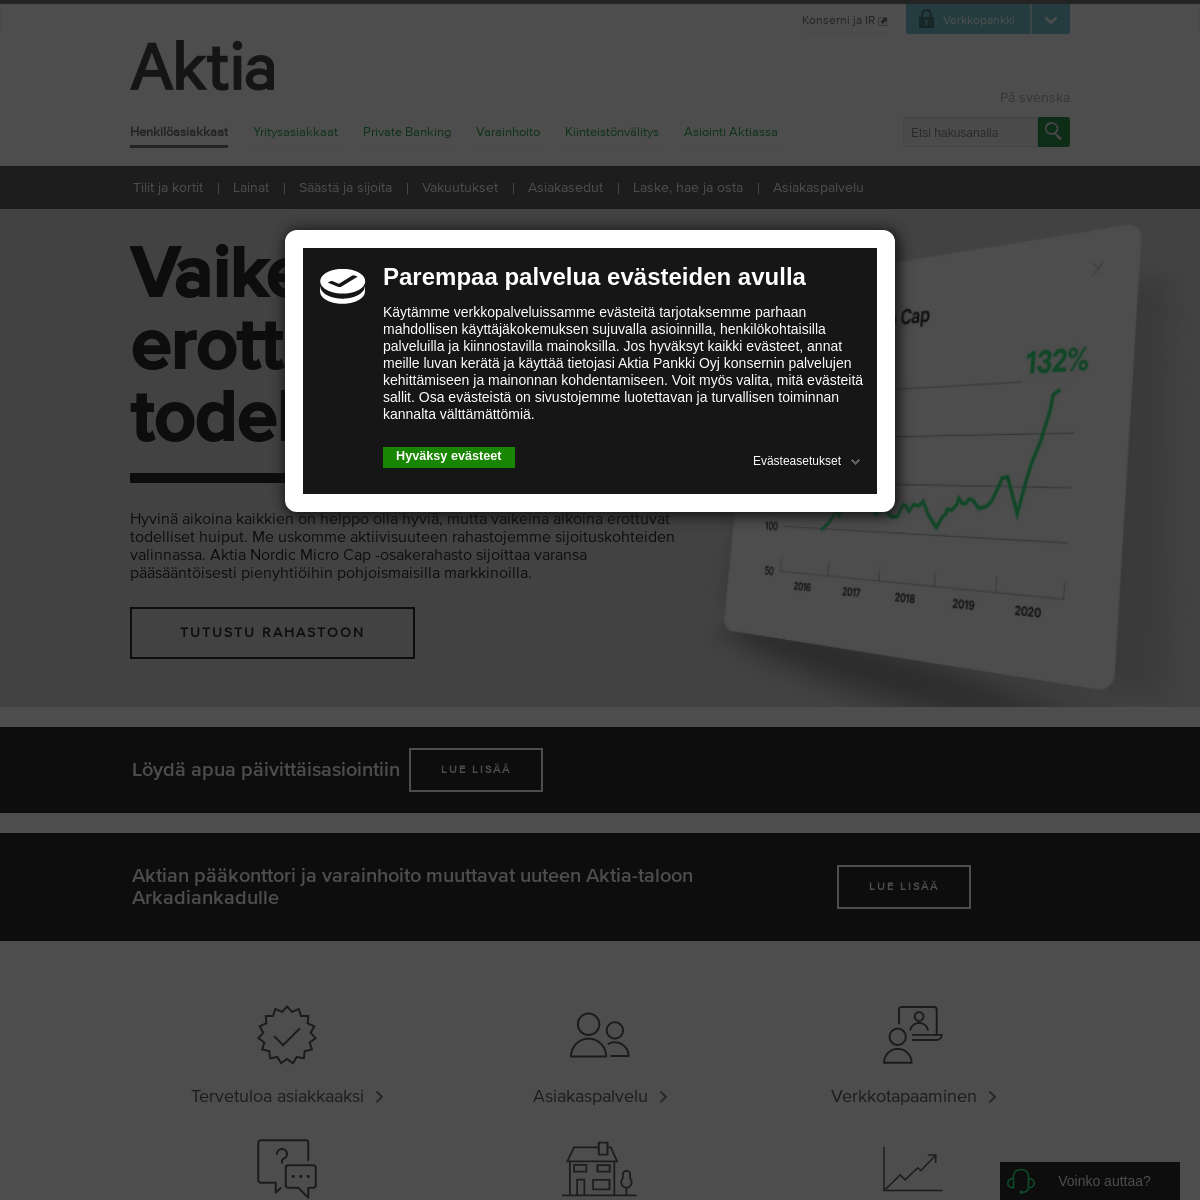 A complete backup of aktia.fi